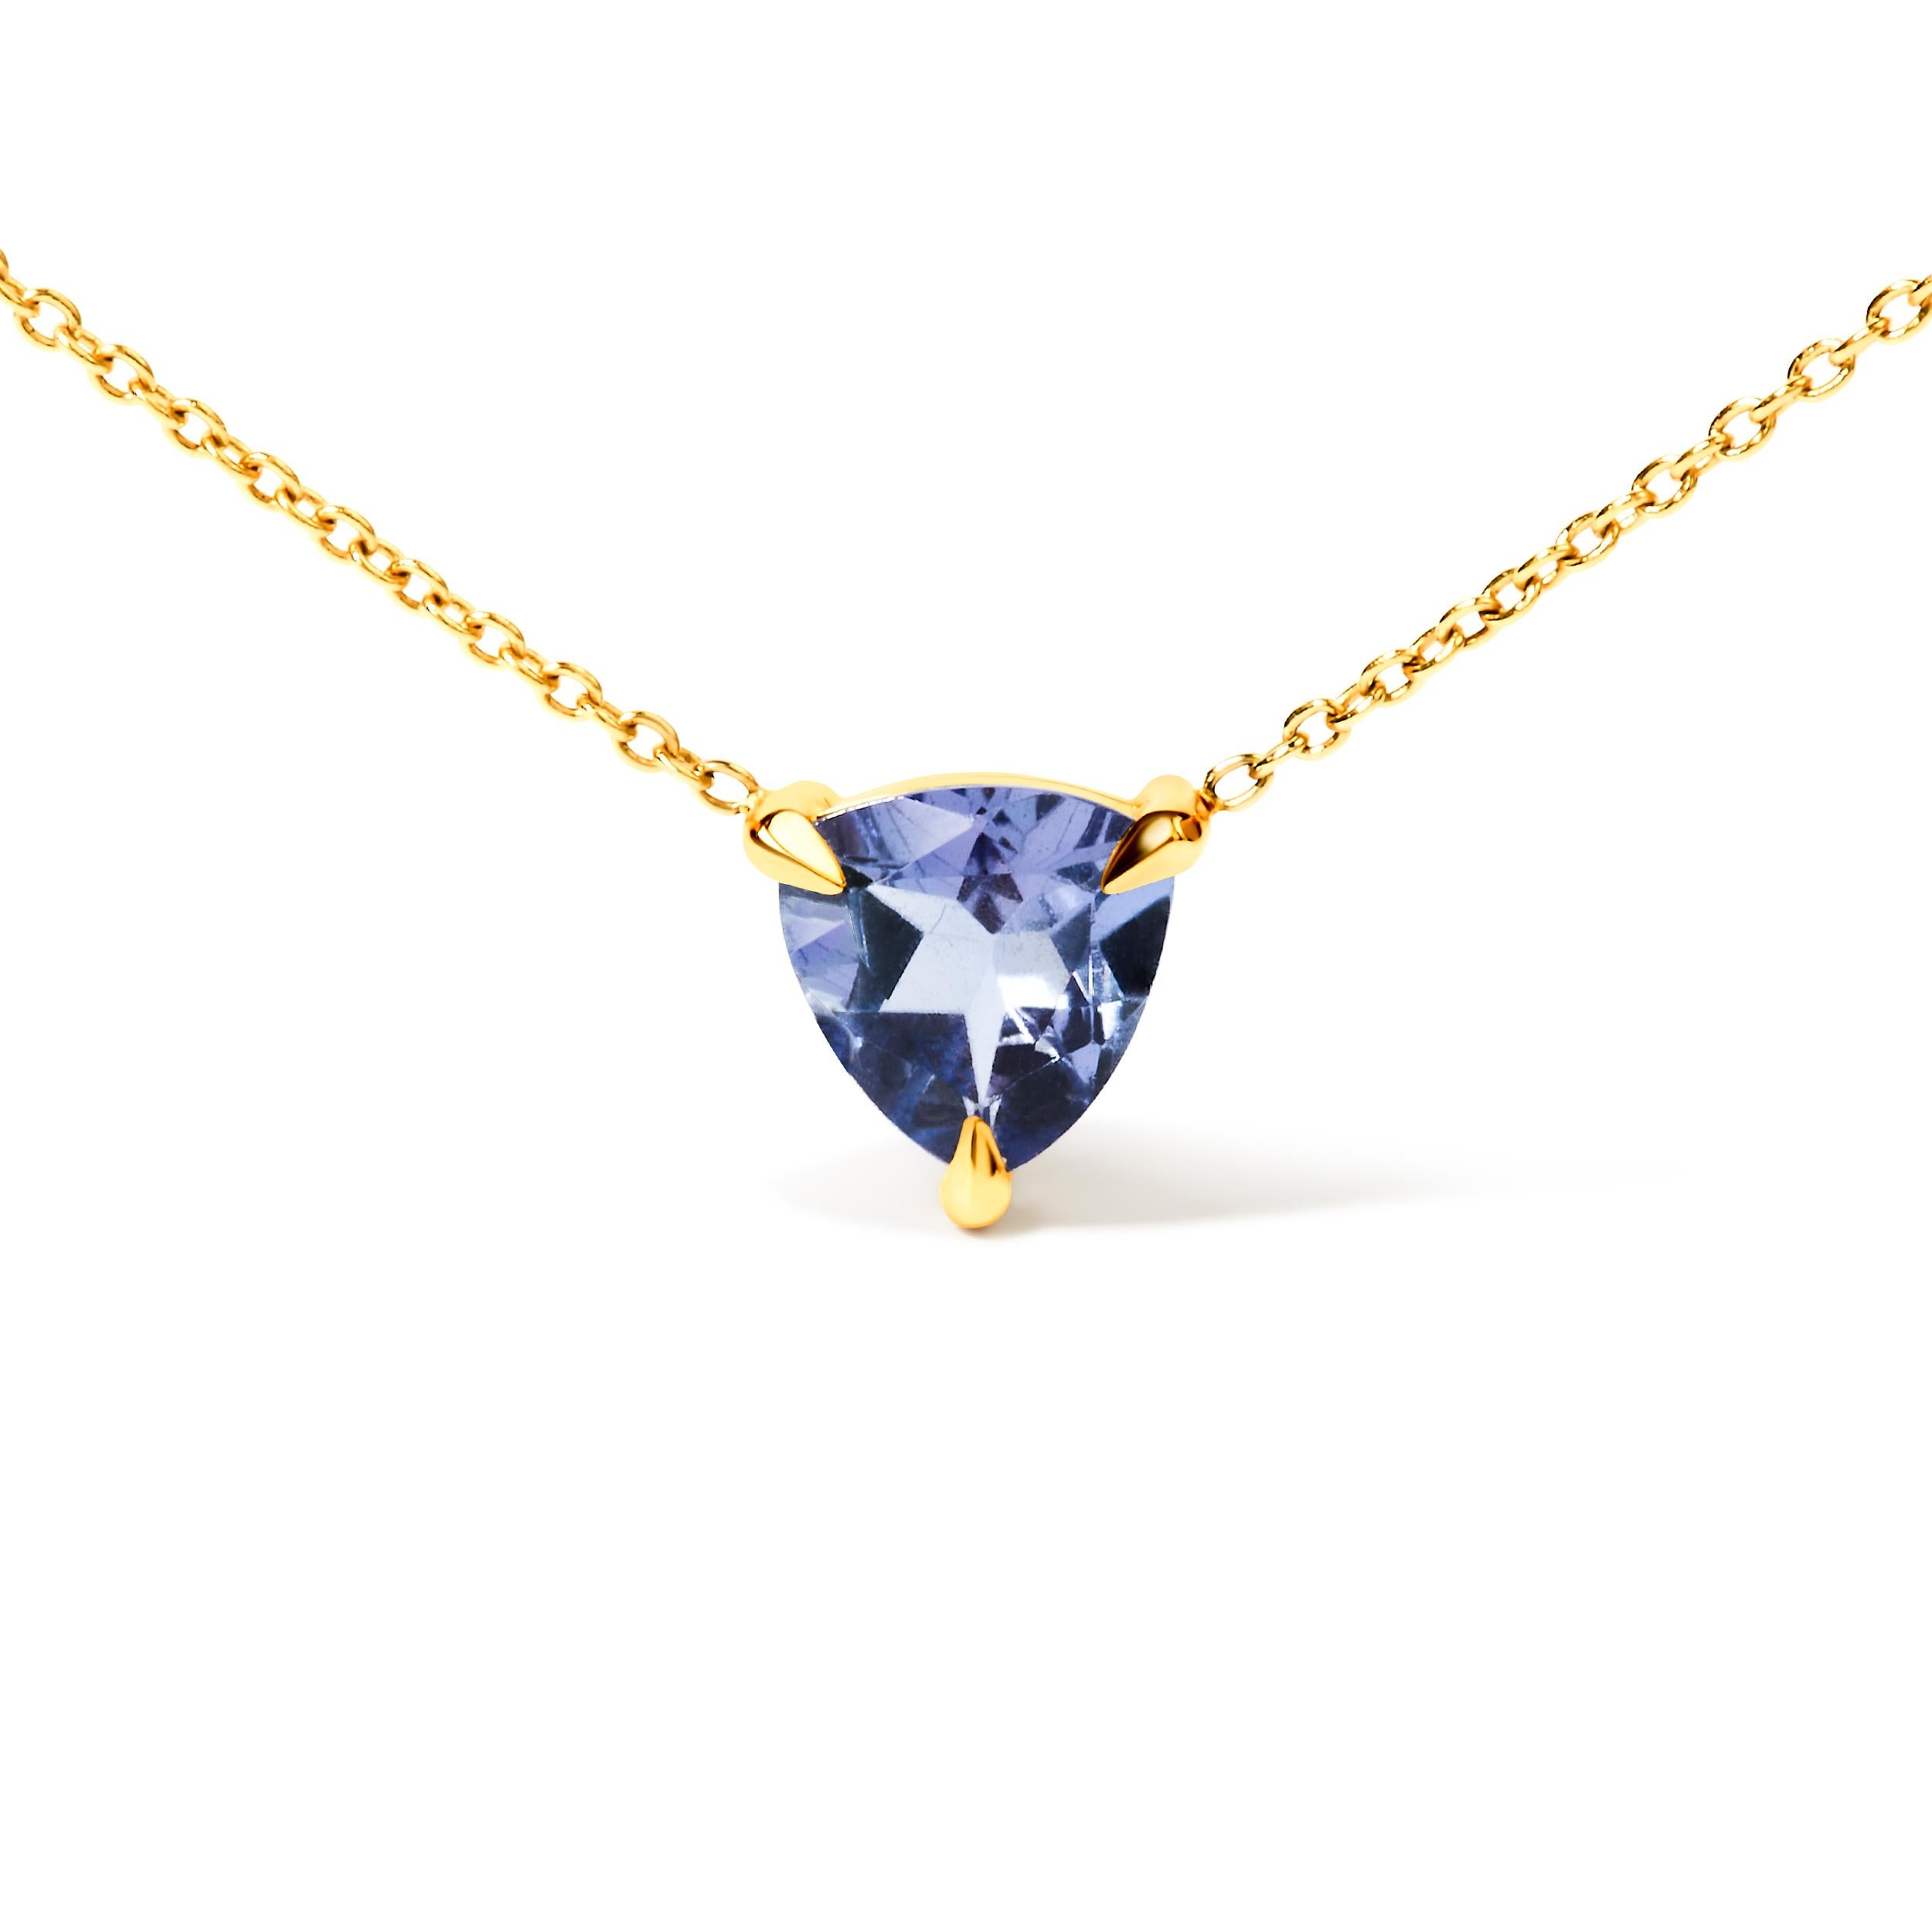 Tauchen Sie ein in die Faszination unserer 14K Gelbgold 3-Prong Martini Set Blue Tanzanite Trillion Solitaire Anhänger Halskette, ein Meisterwerk von zeitloser Schönheit. Diese Halskette aus exquisitem 14-karätigem Gelbgold ist mit einem